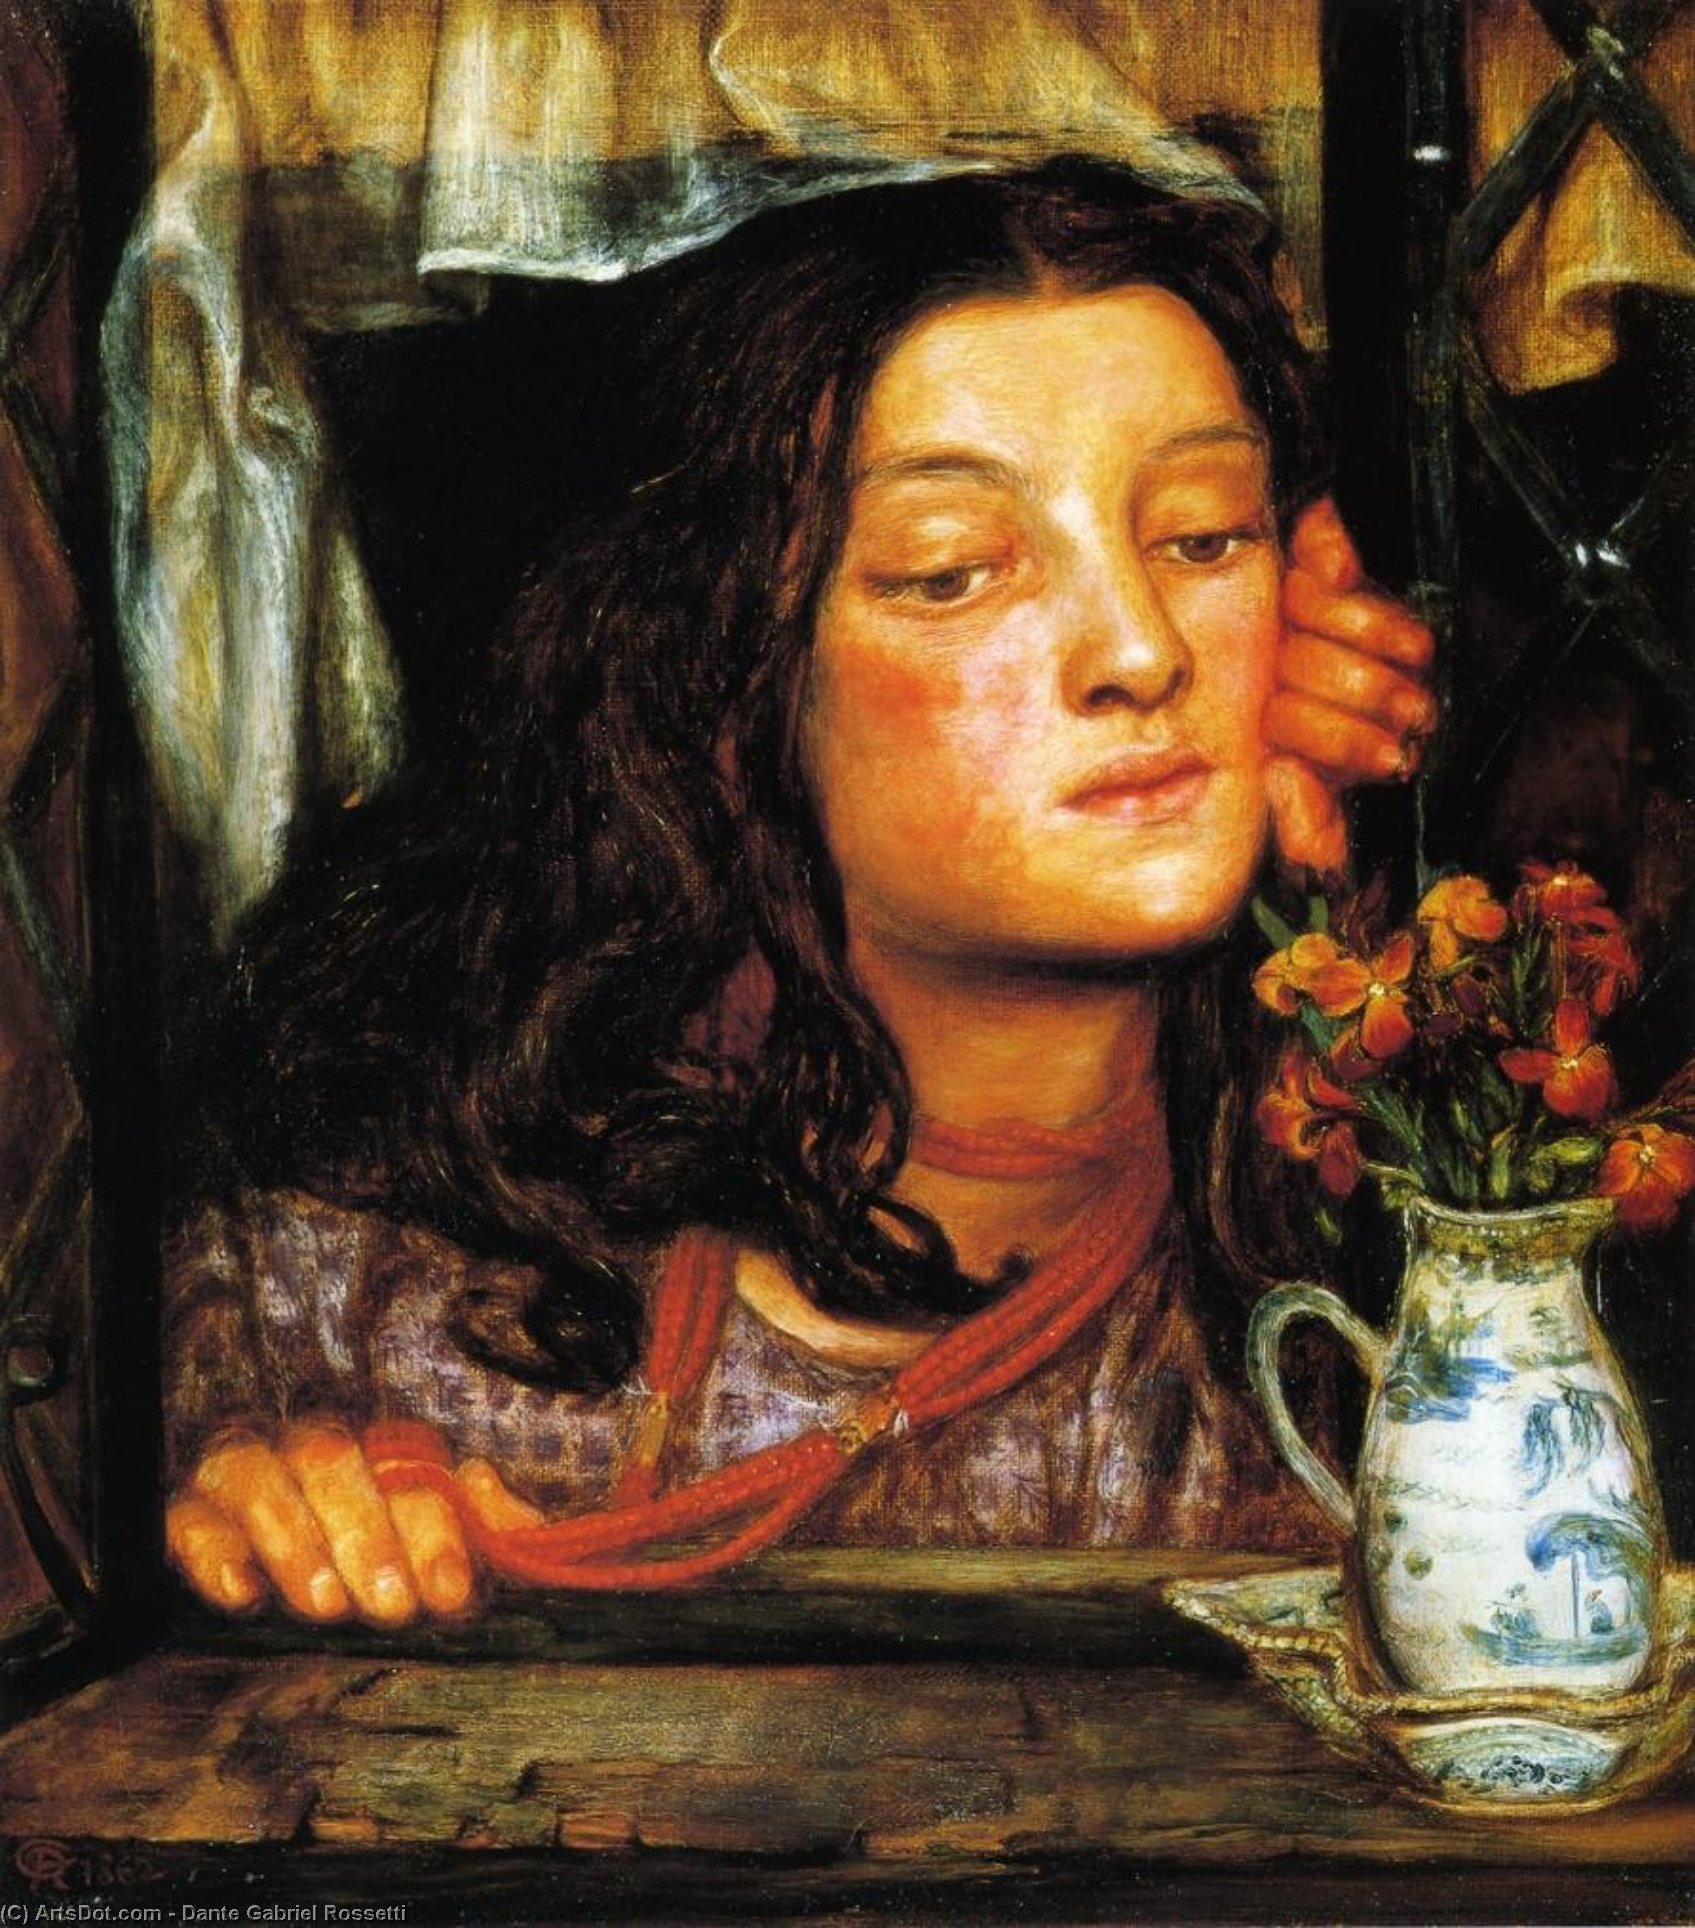 Comprar Reproducciones De Arte Del Museo Chica en Lattice, 1862 de Dante Gabriel Rossetti | ArtsDot.com